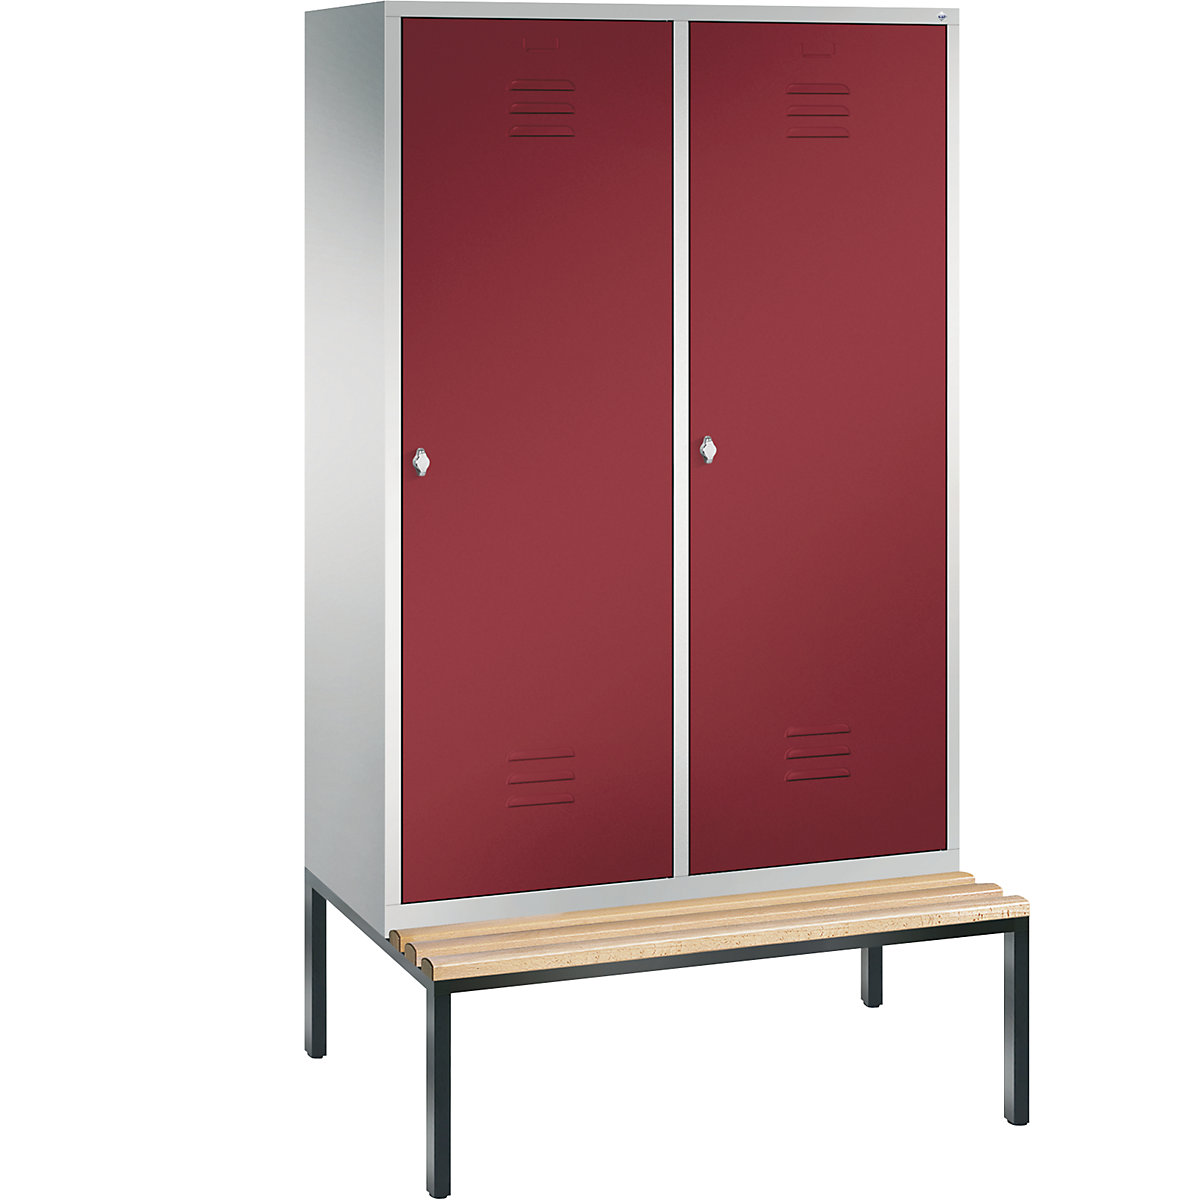 Šatní skříň s podstavnou lavicí CLASSIC s dveřmi přes 2 oddíly – C+P, 4 oddíly, šířka oddílu 300 mm, světlá šedá / rubínová-14